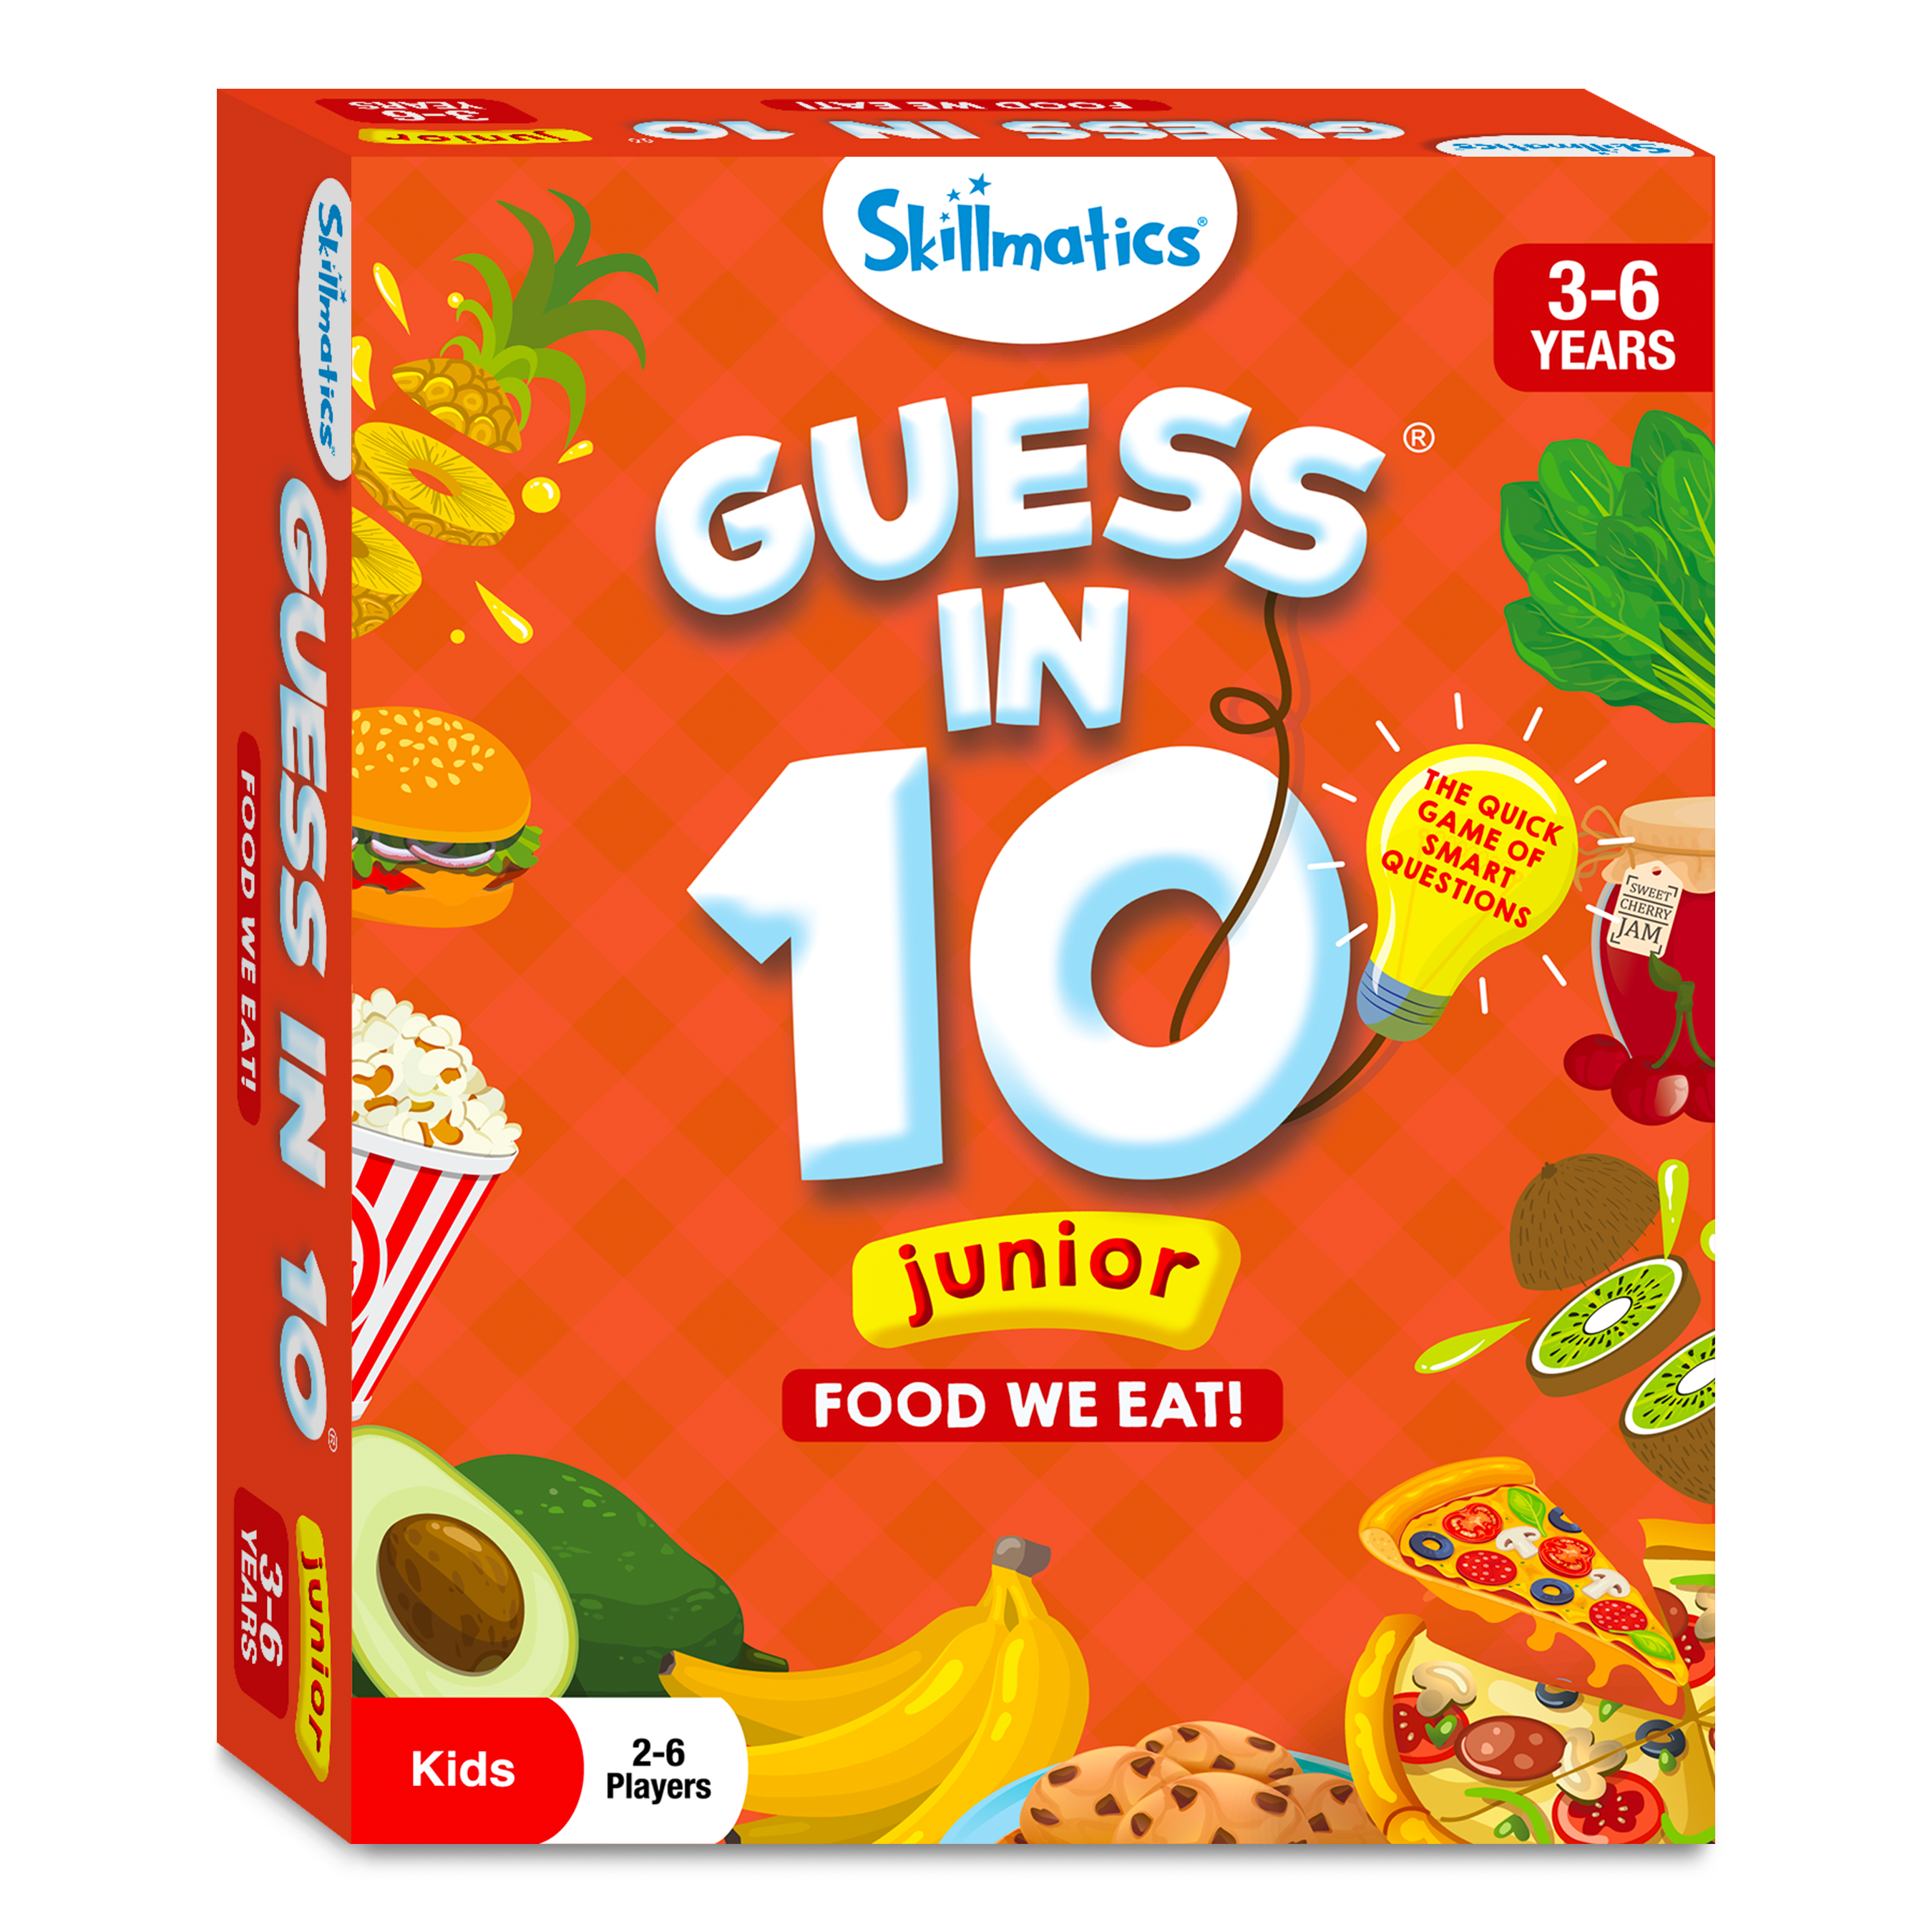 Guess in 10 Junior - Food We Eat!